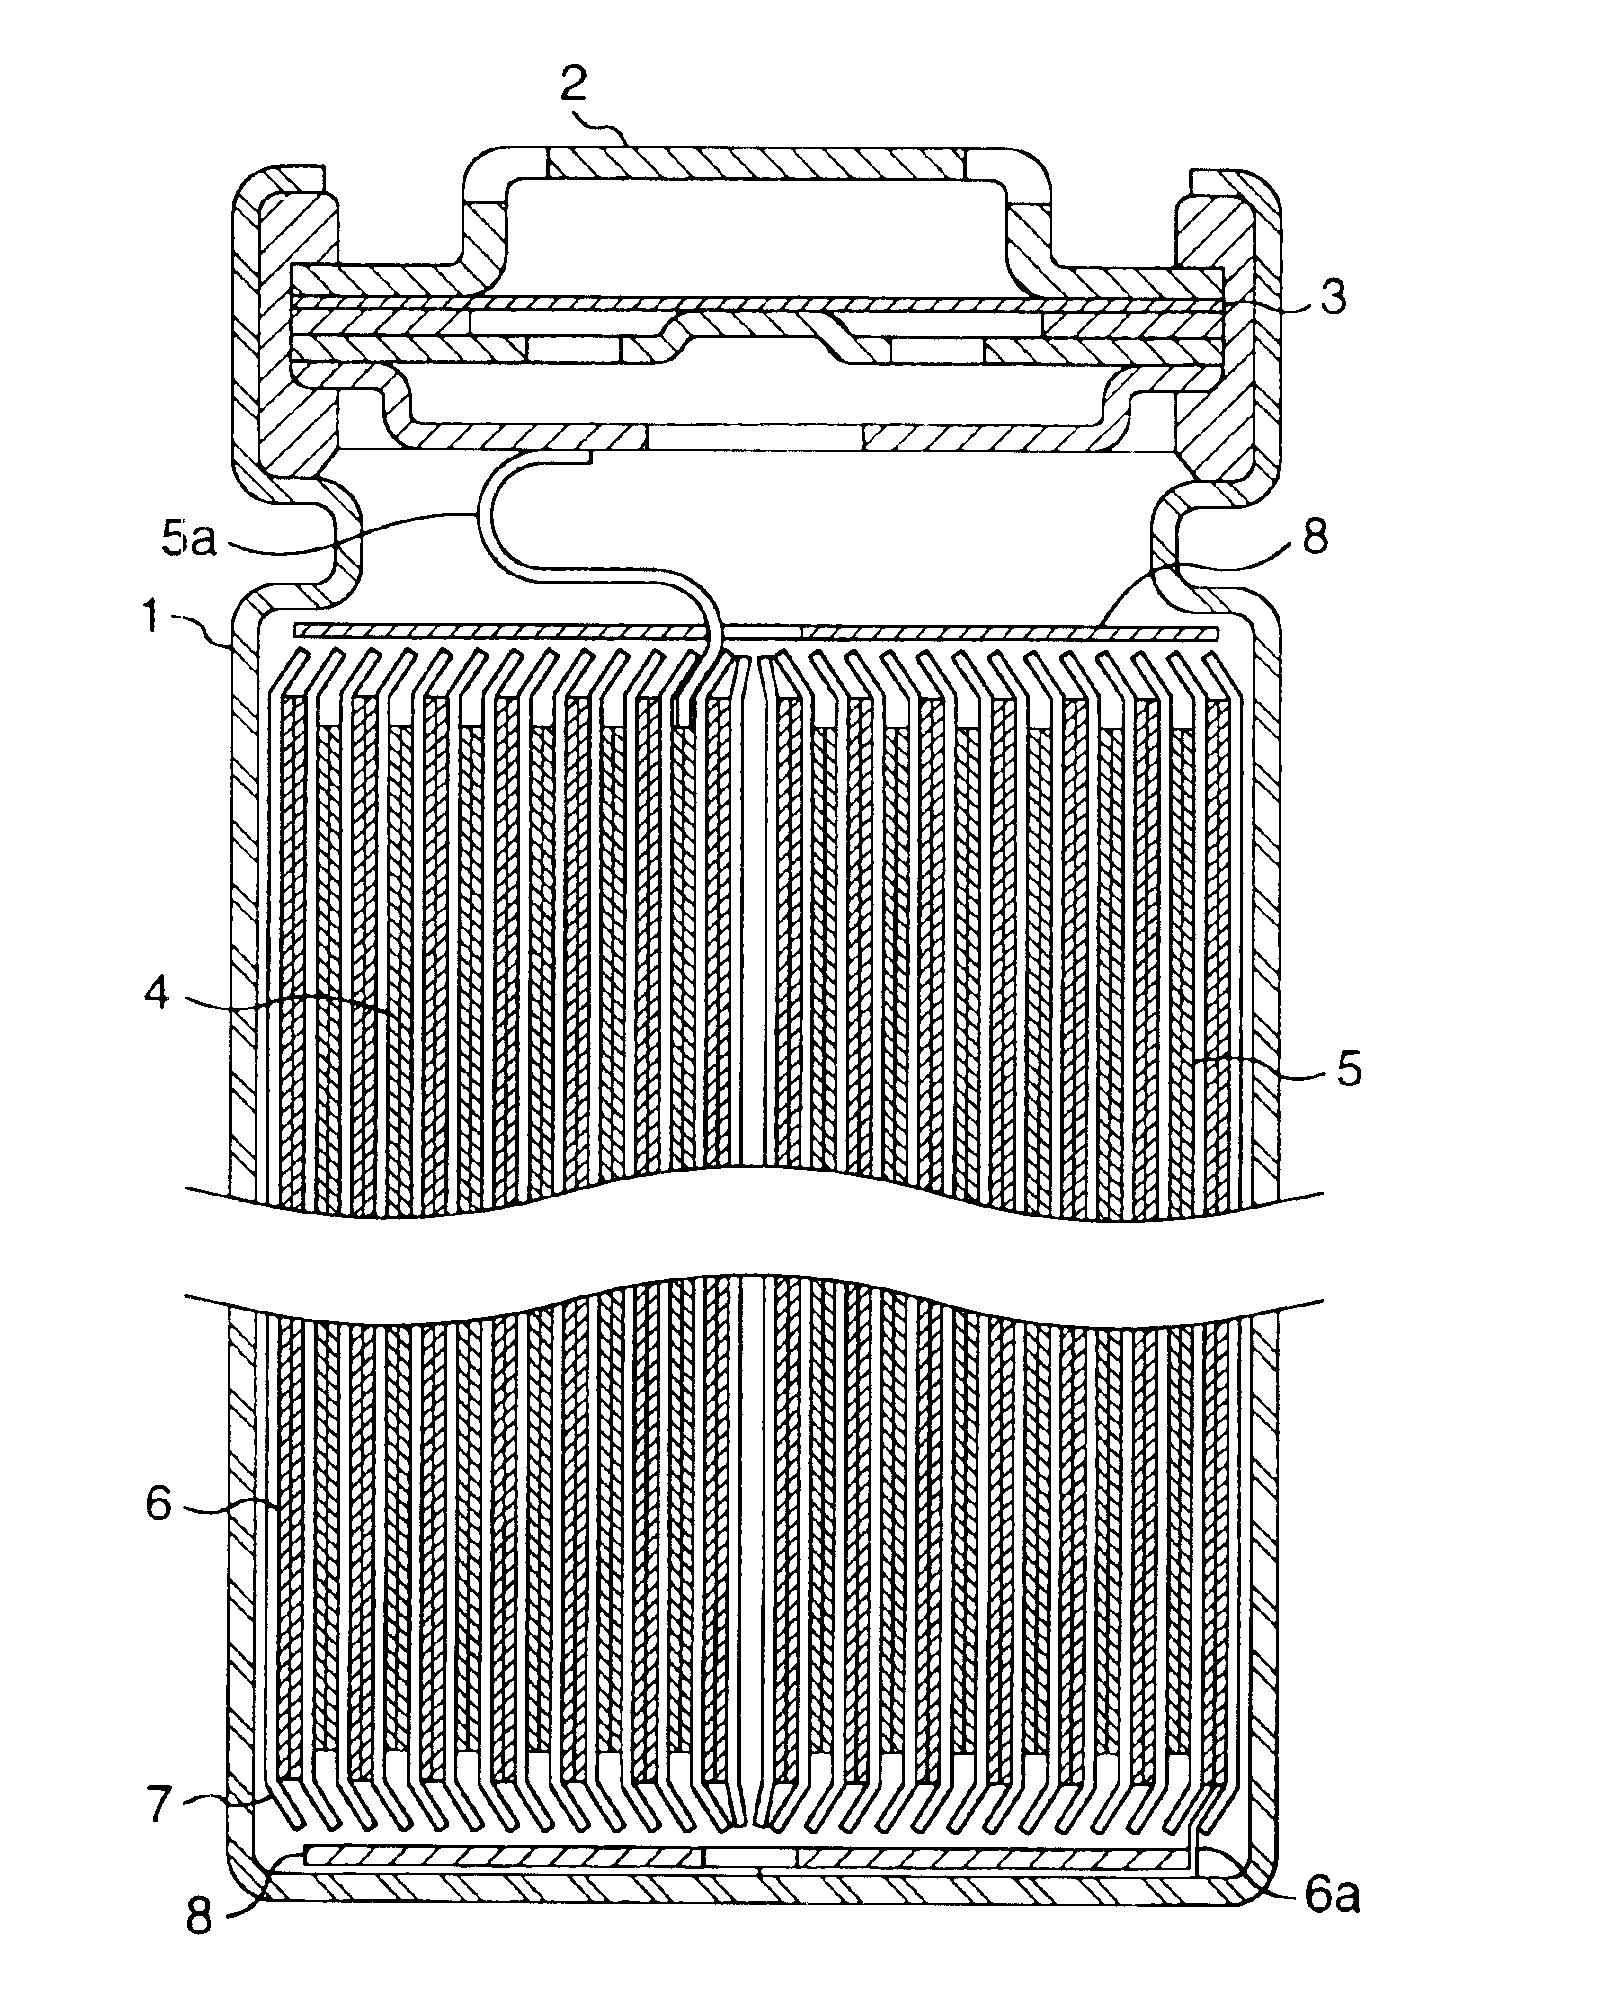 Non-aqueous electrochemical apparatus